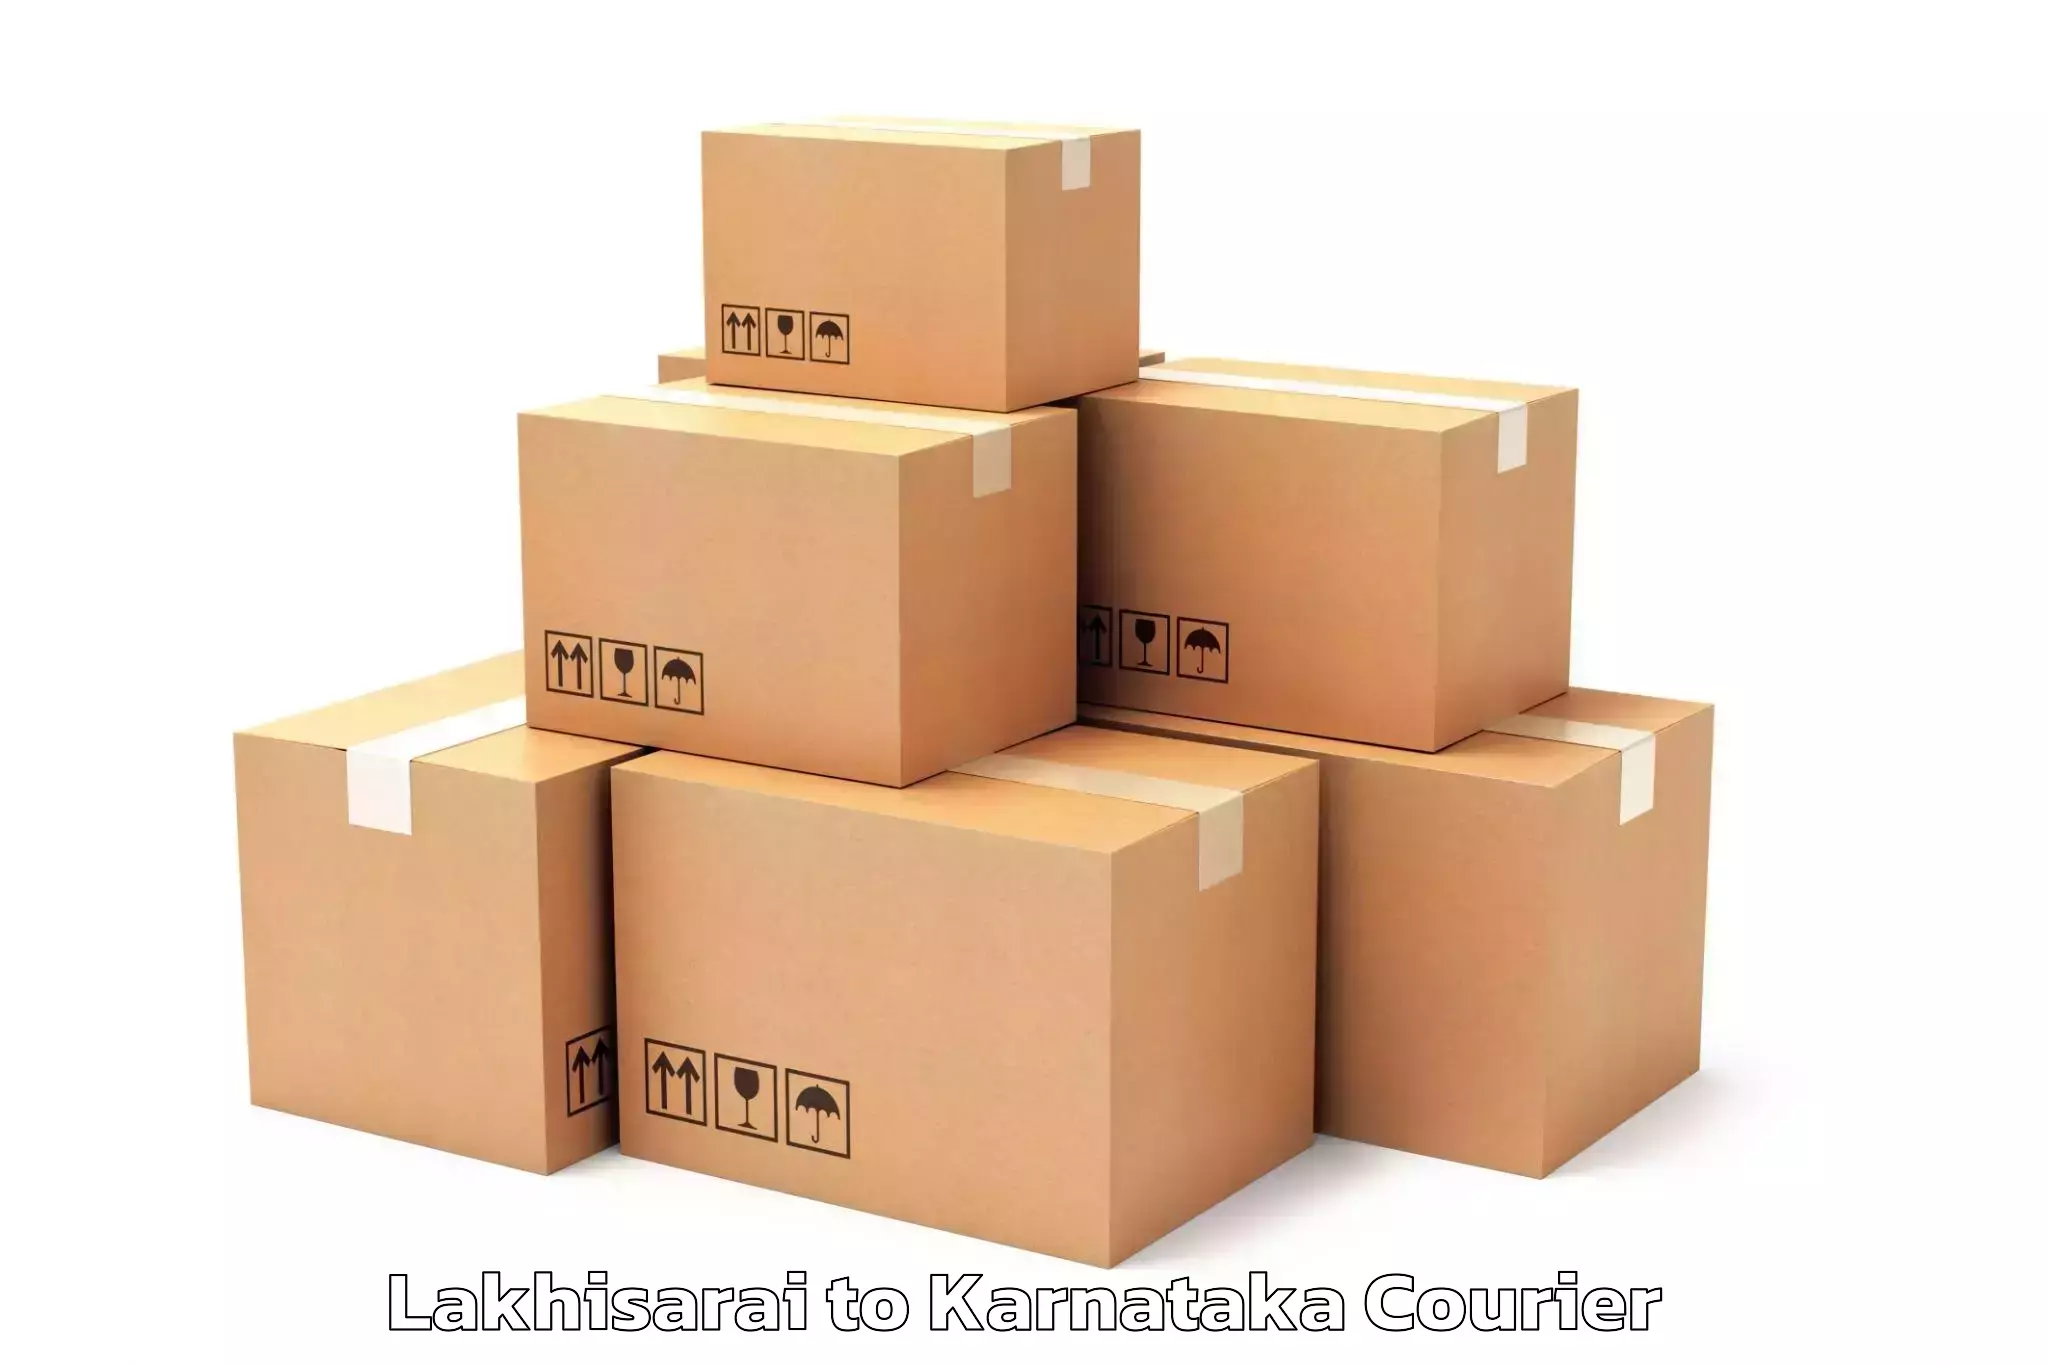 Furniture moving experts Lakhisarai to Kanjarakatte